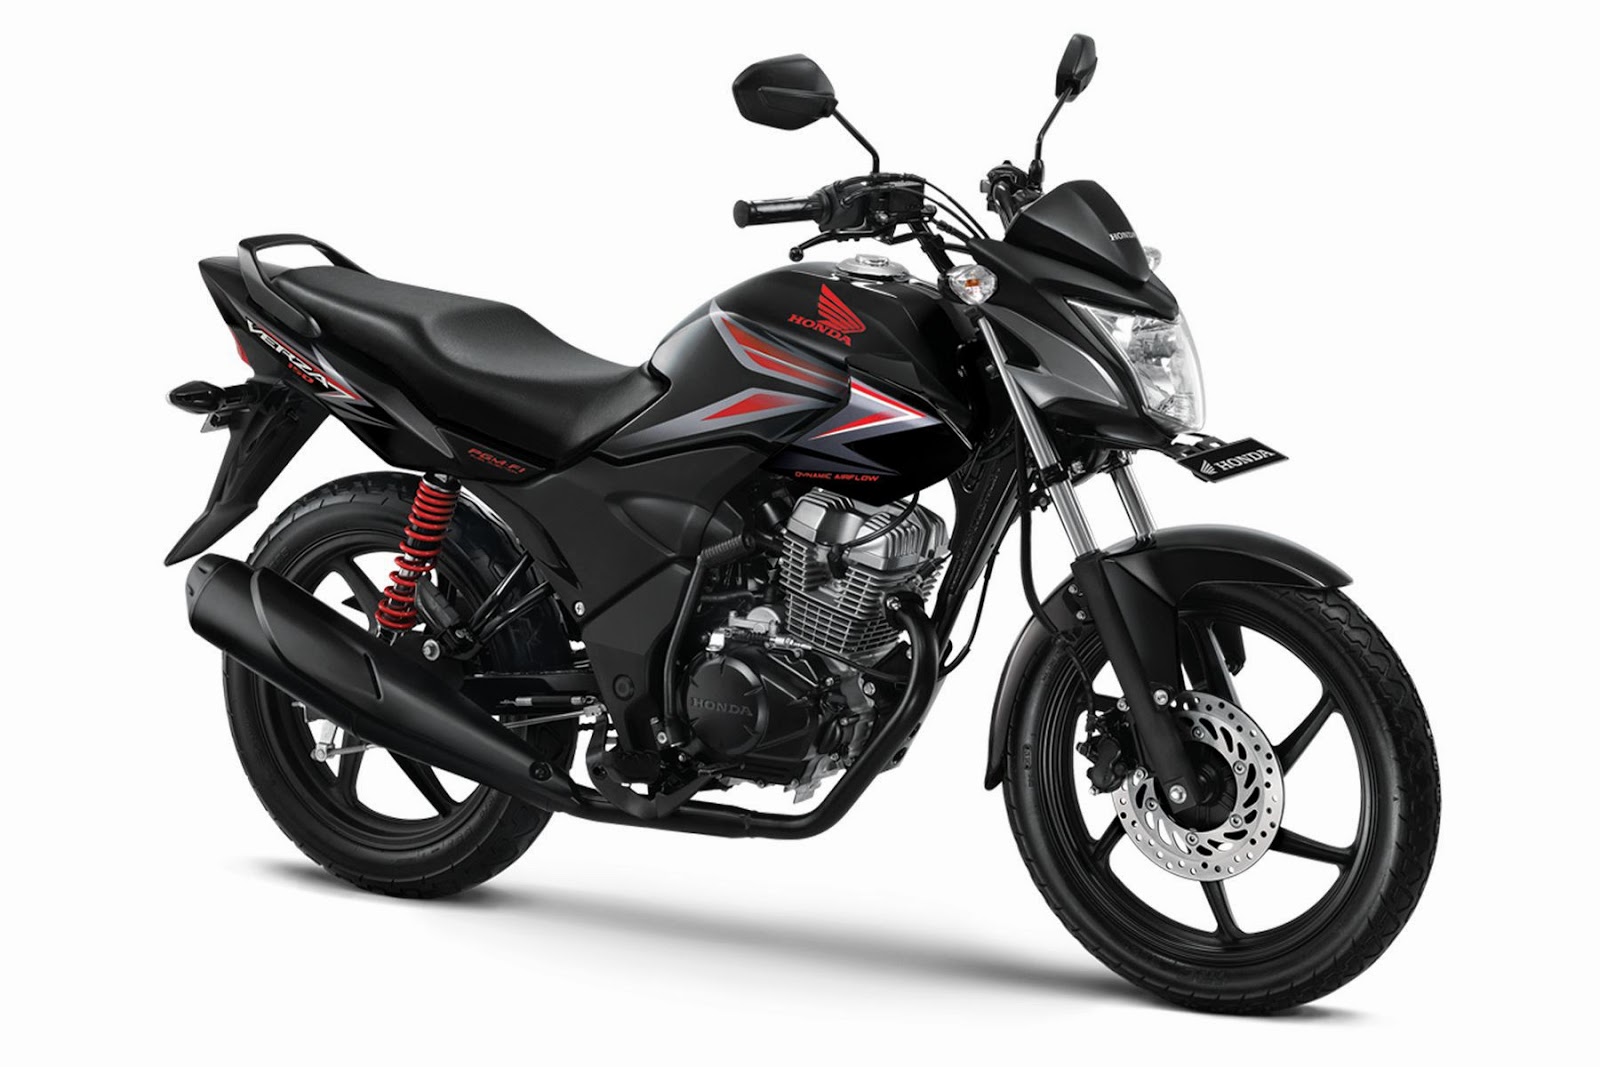 Honda CB150R Verza 2019 có giá hơn 40 triệu đồng tại Sài Gòn